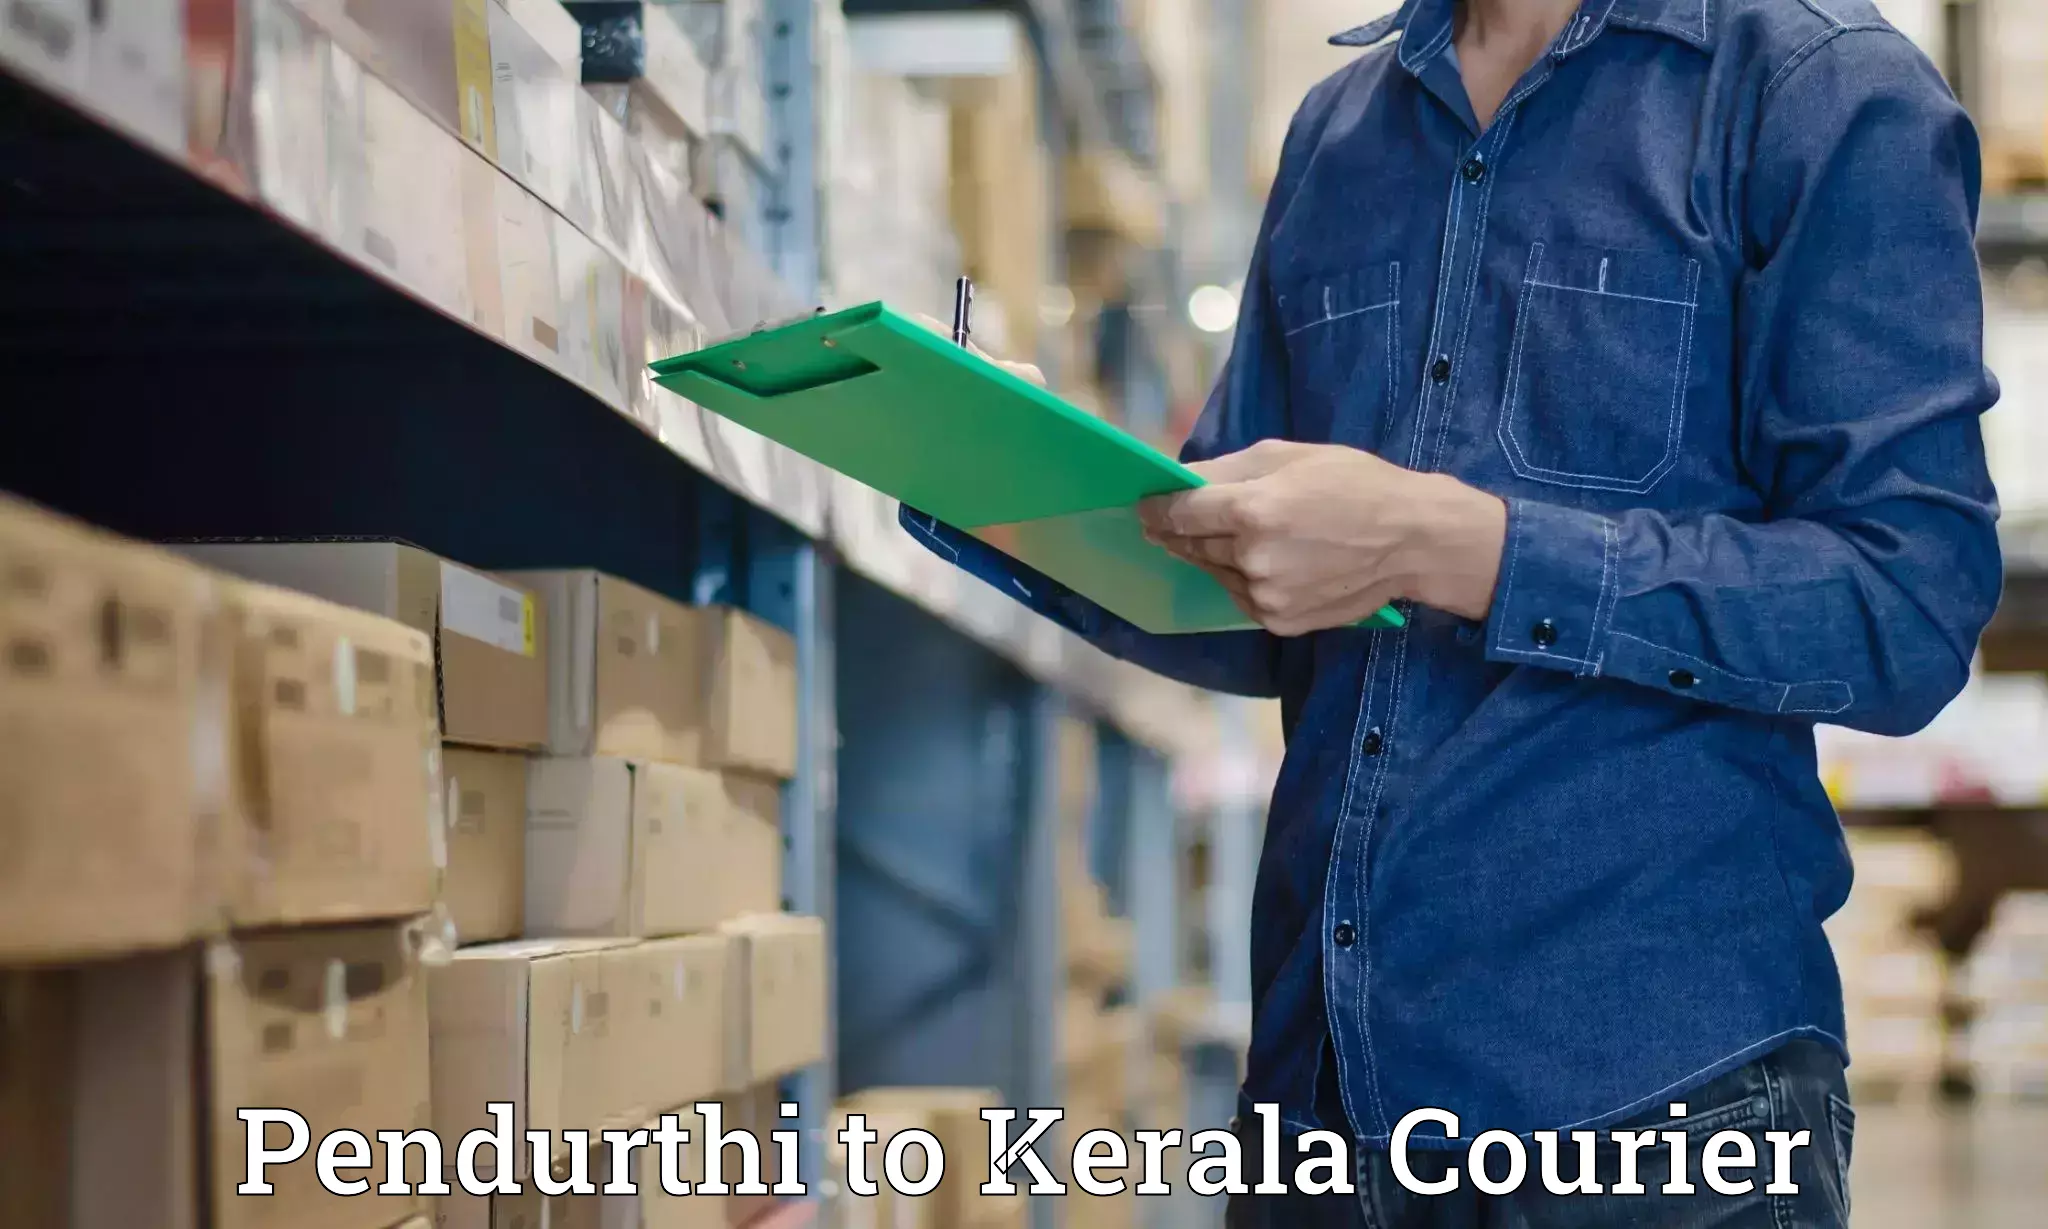 Flexible courier rates Pendurthi to Kalpetta